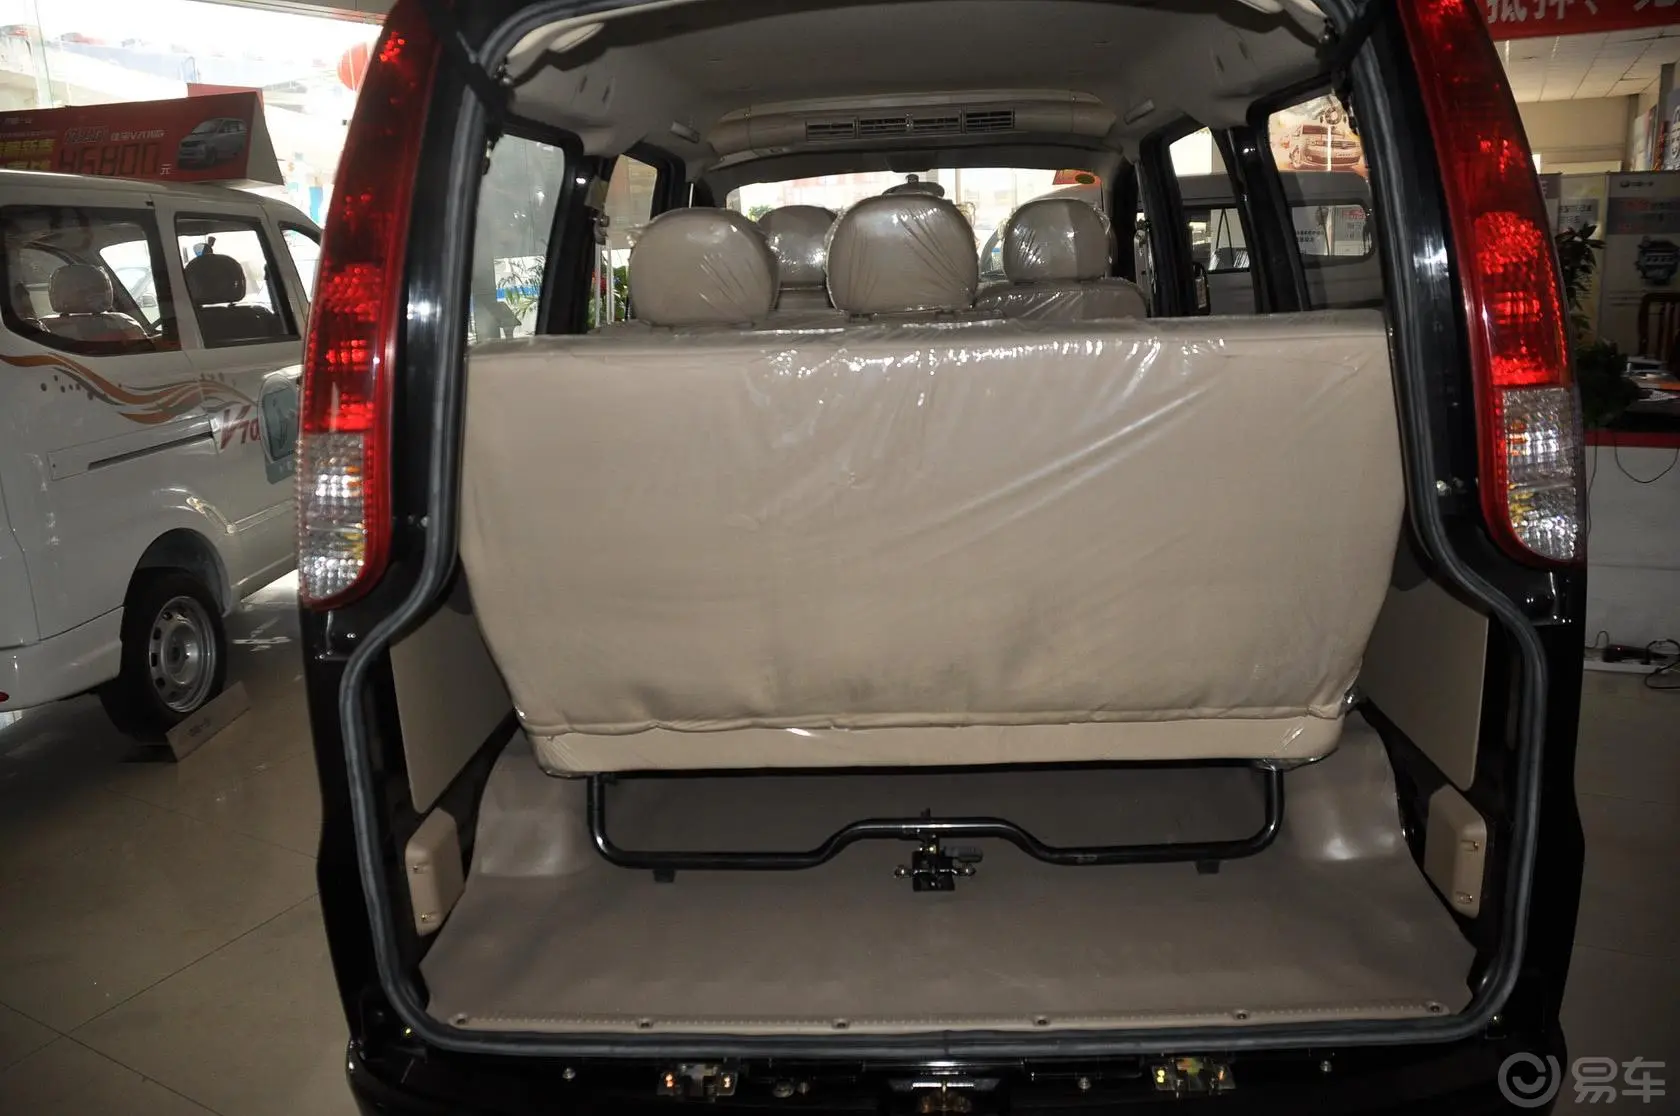 佳宝V70V70 1.3L 舒适型空调版 国三行李箱空间